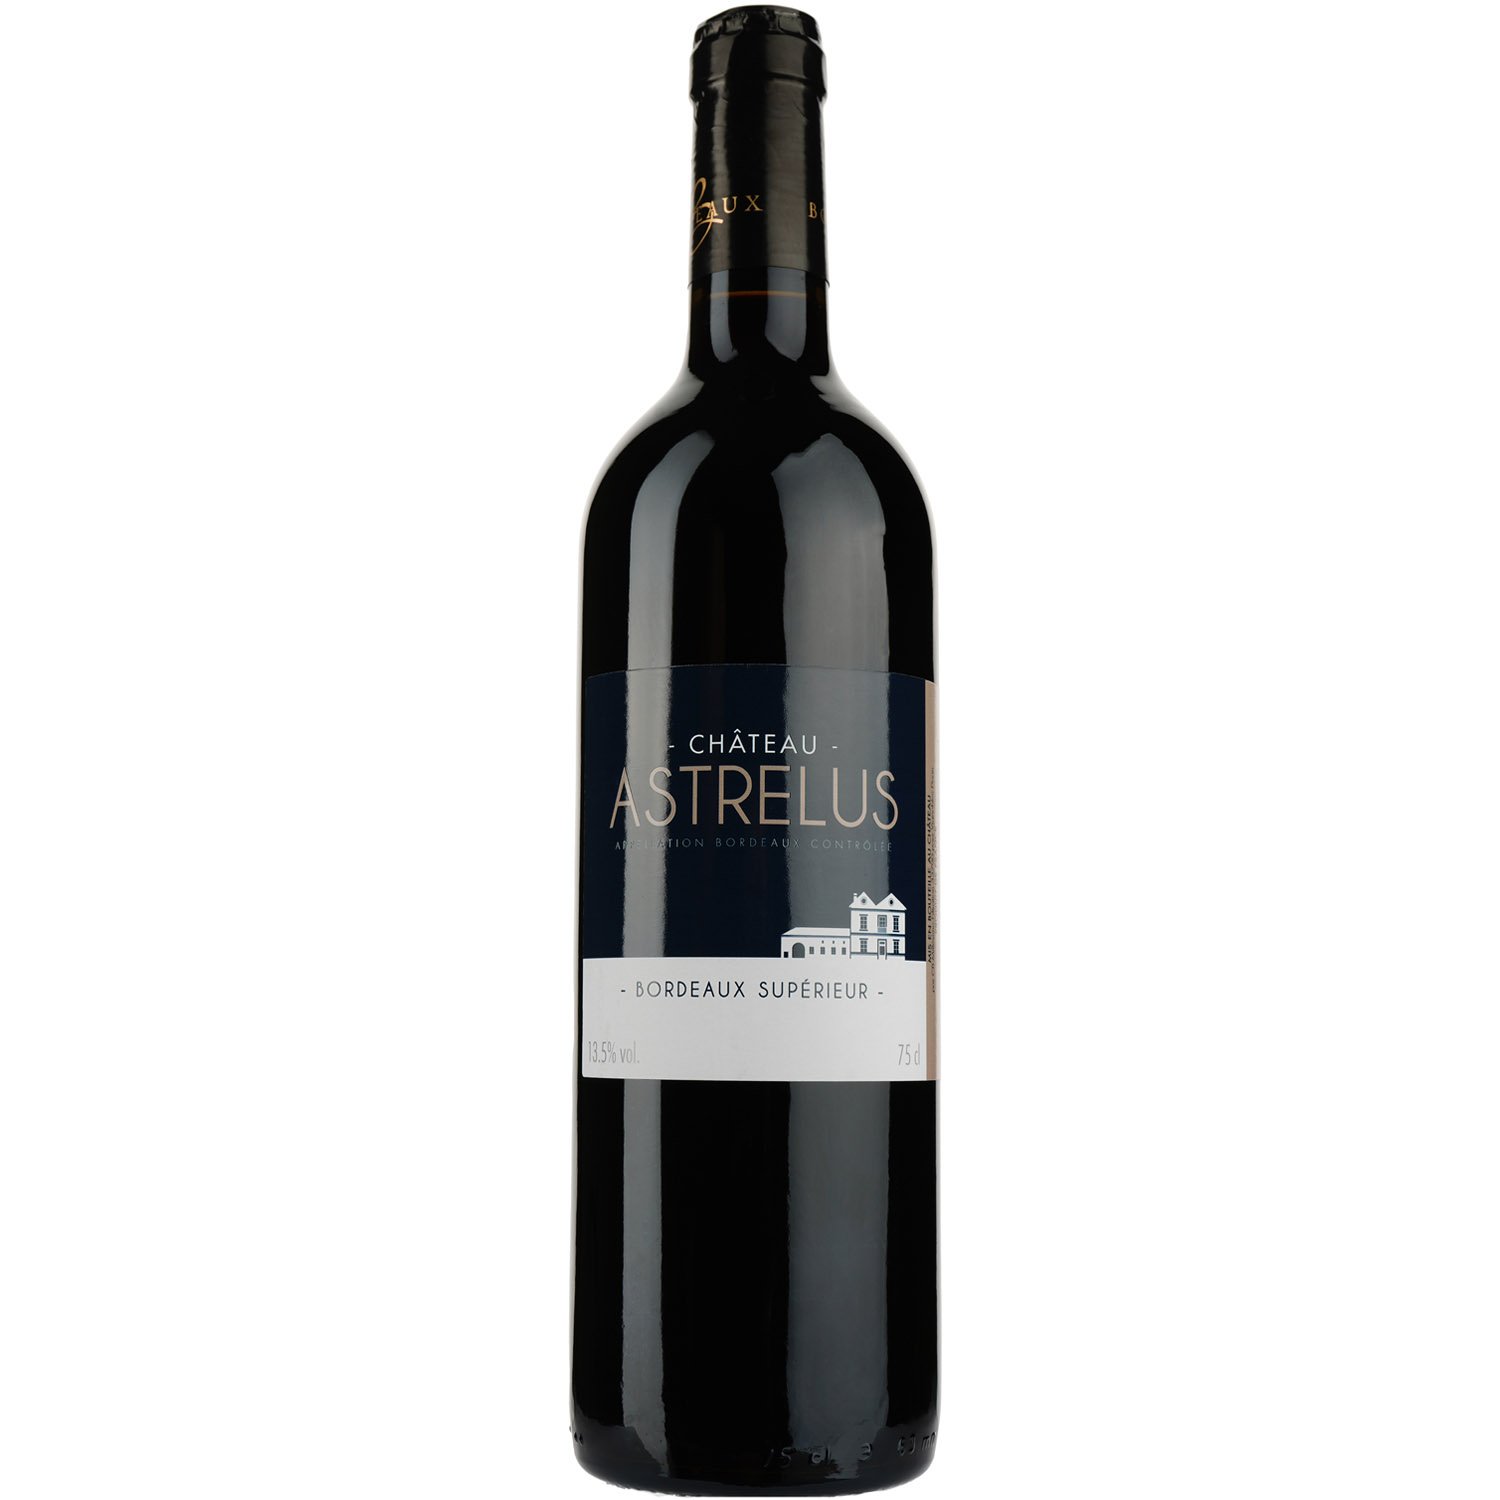 Вино Chateau Astrelus AOP Bordeaux Superieur 2018, красное, сухое, 0,75 л - фото 1